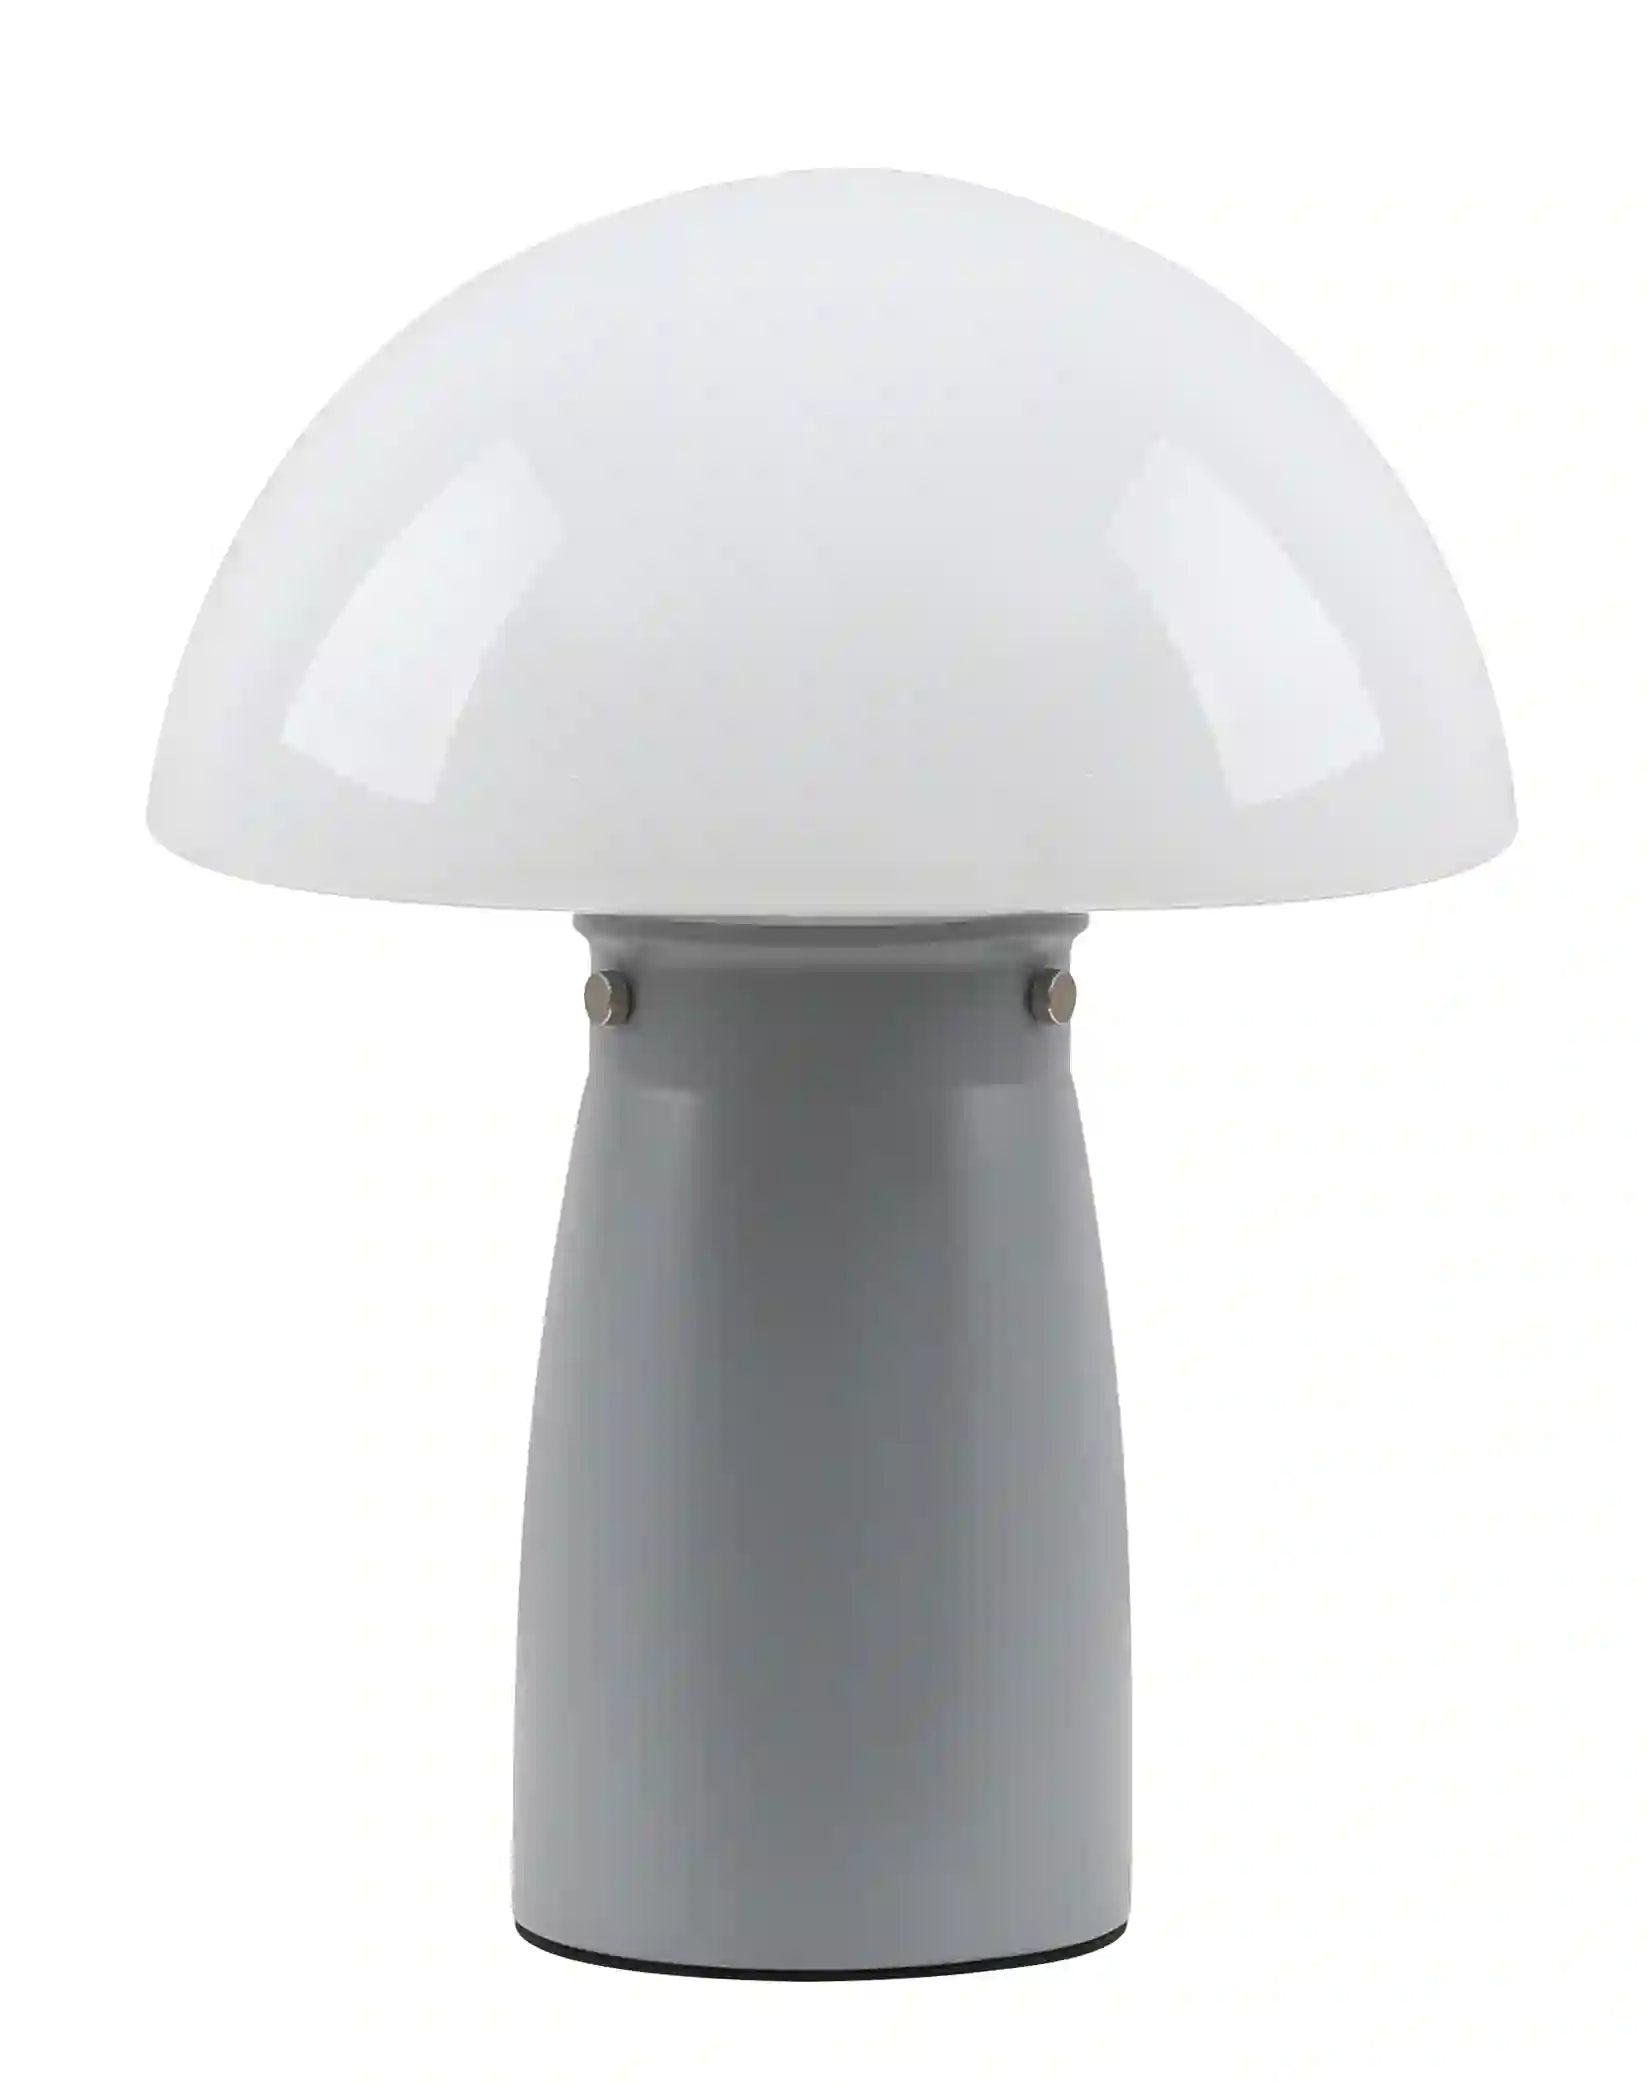 Selected image for Rea Light Clio HN2456-7045 Stona lampa, E27, 25W, Ø25cm, Siva